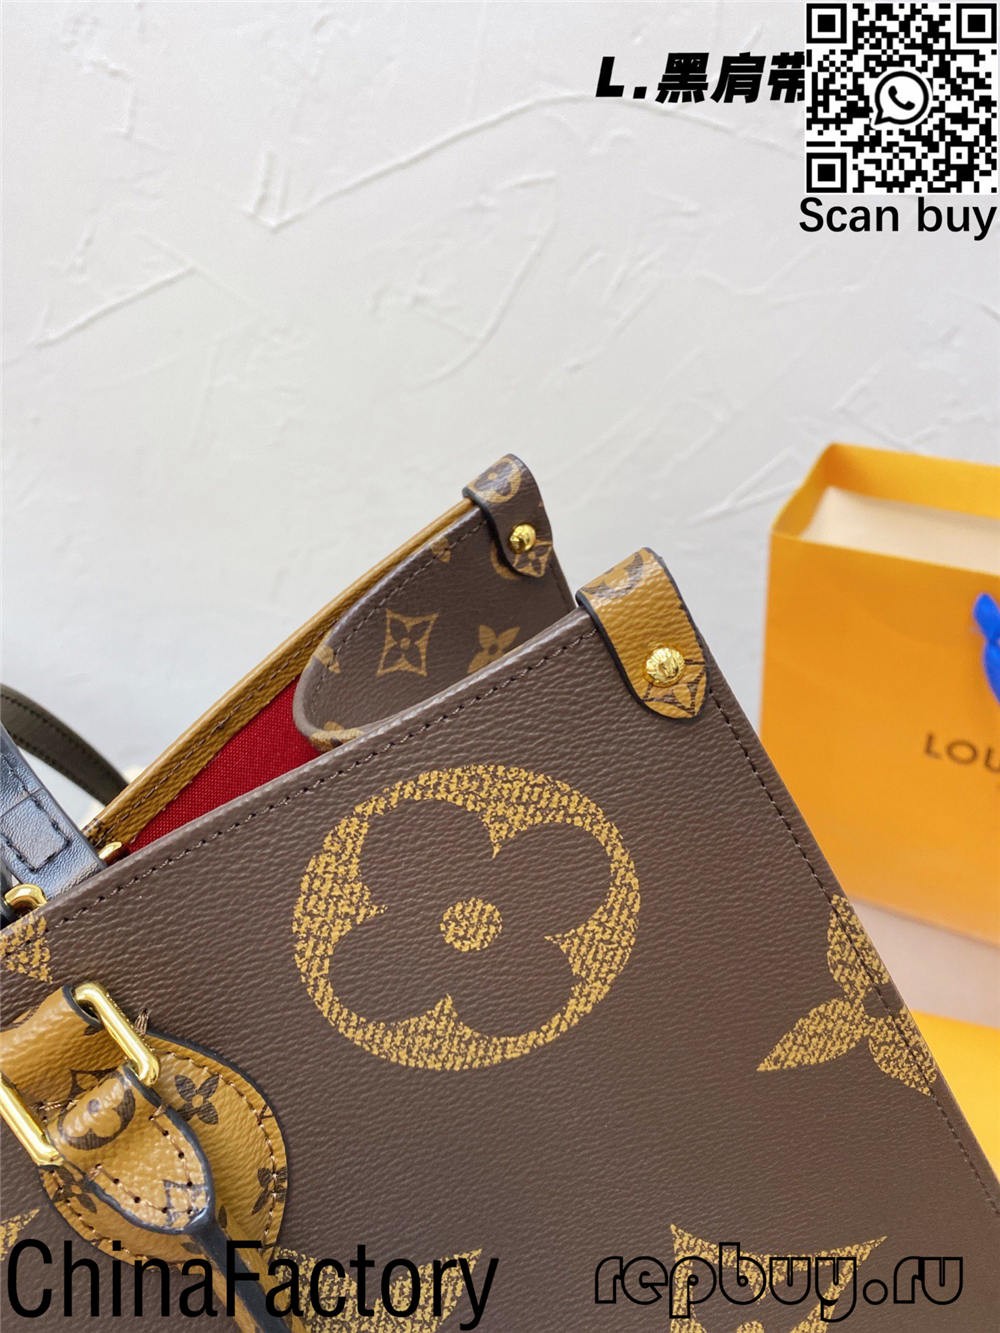 Top 12 migliori borse replica di qualità di Louis Vuitton da acquistare (aggiornato 2022)-Best Quality Fake Louis Vuitton Bag Online Store, Replica designer bag ru